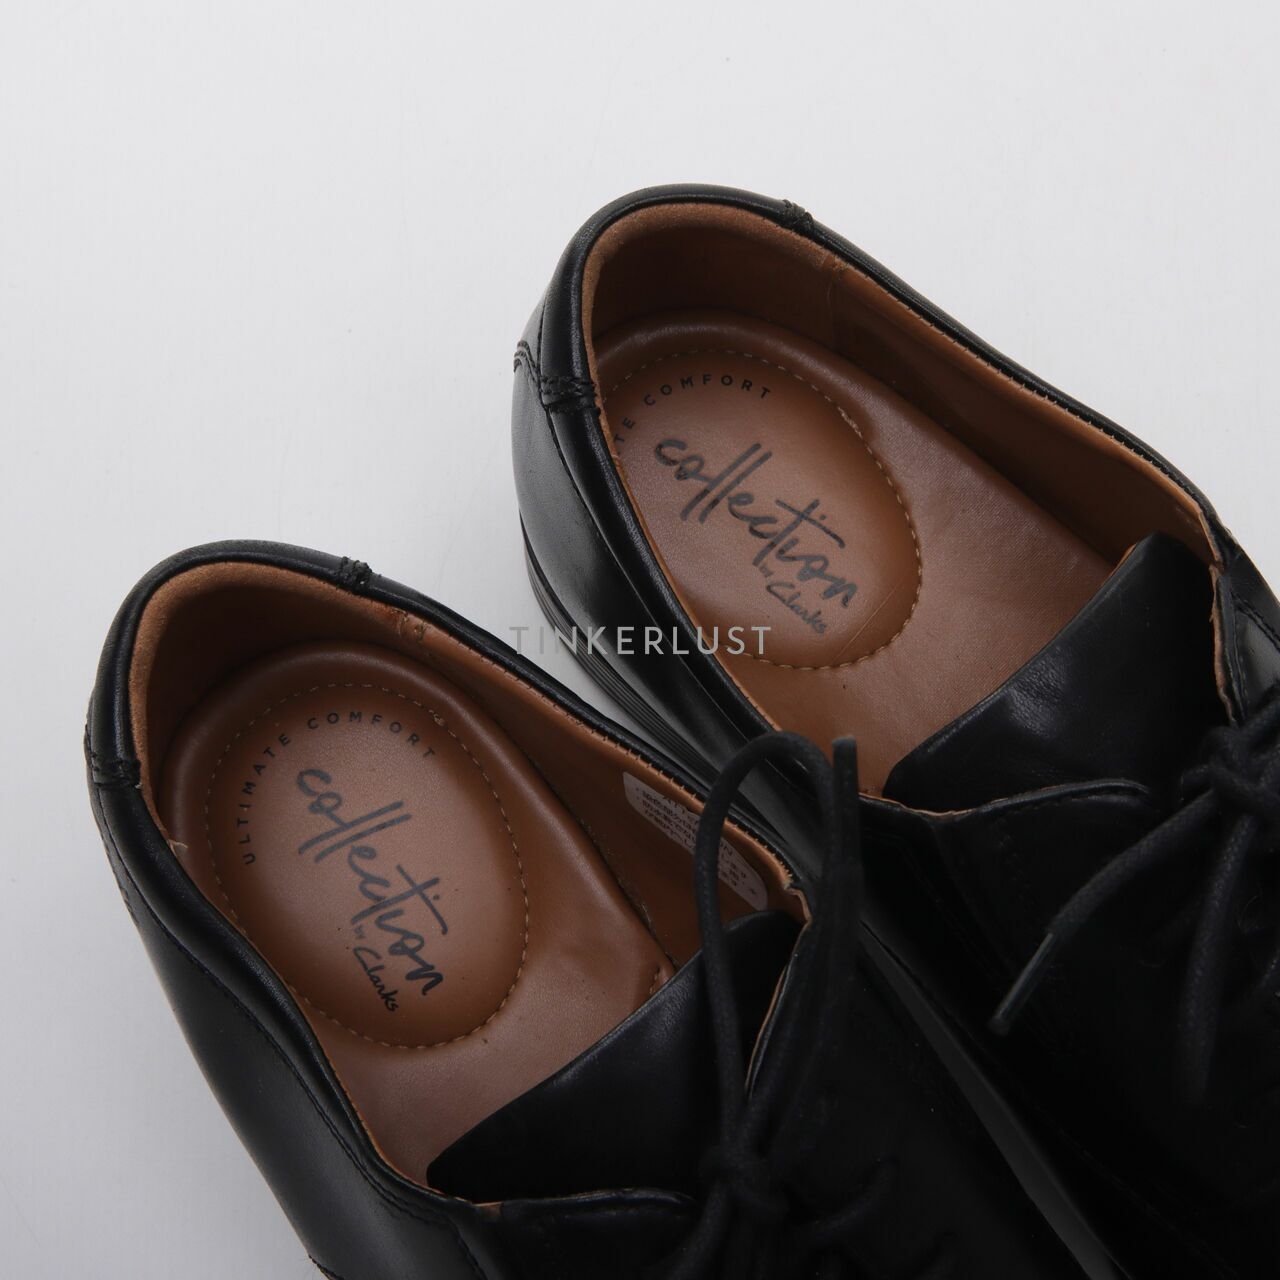 Men's Clarks Tilden Walk Lace-Up Oxfords Shoes Black Leather Square Toe Size 11M